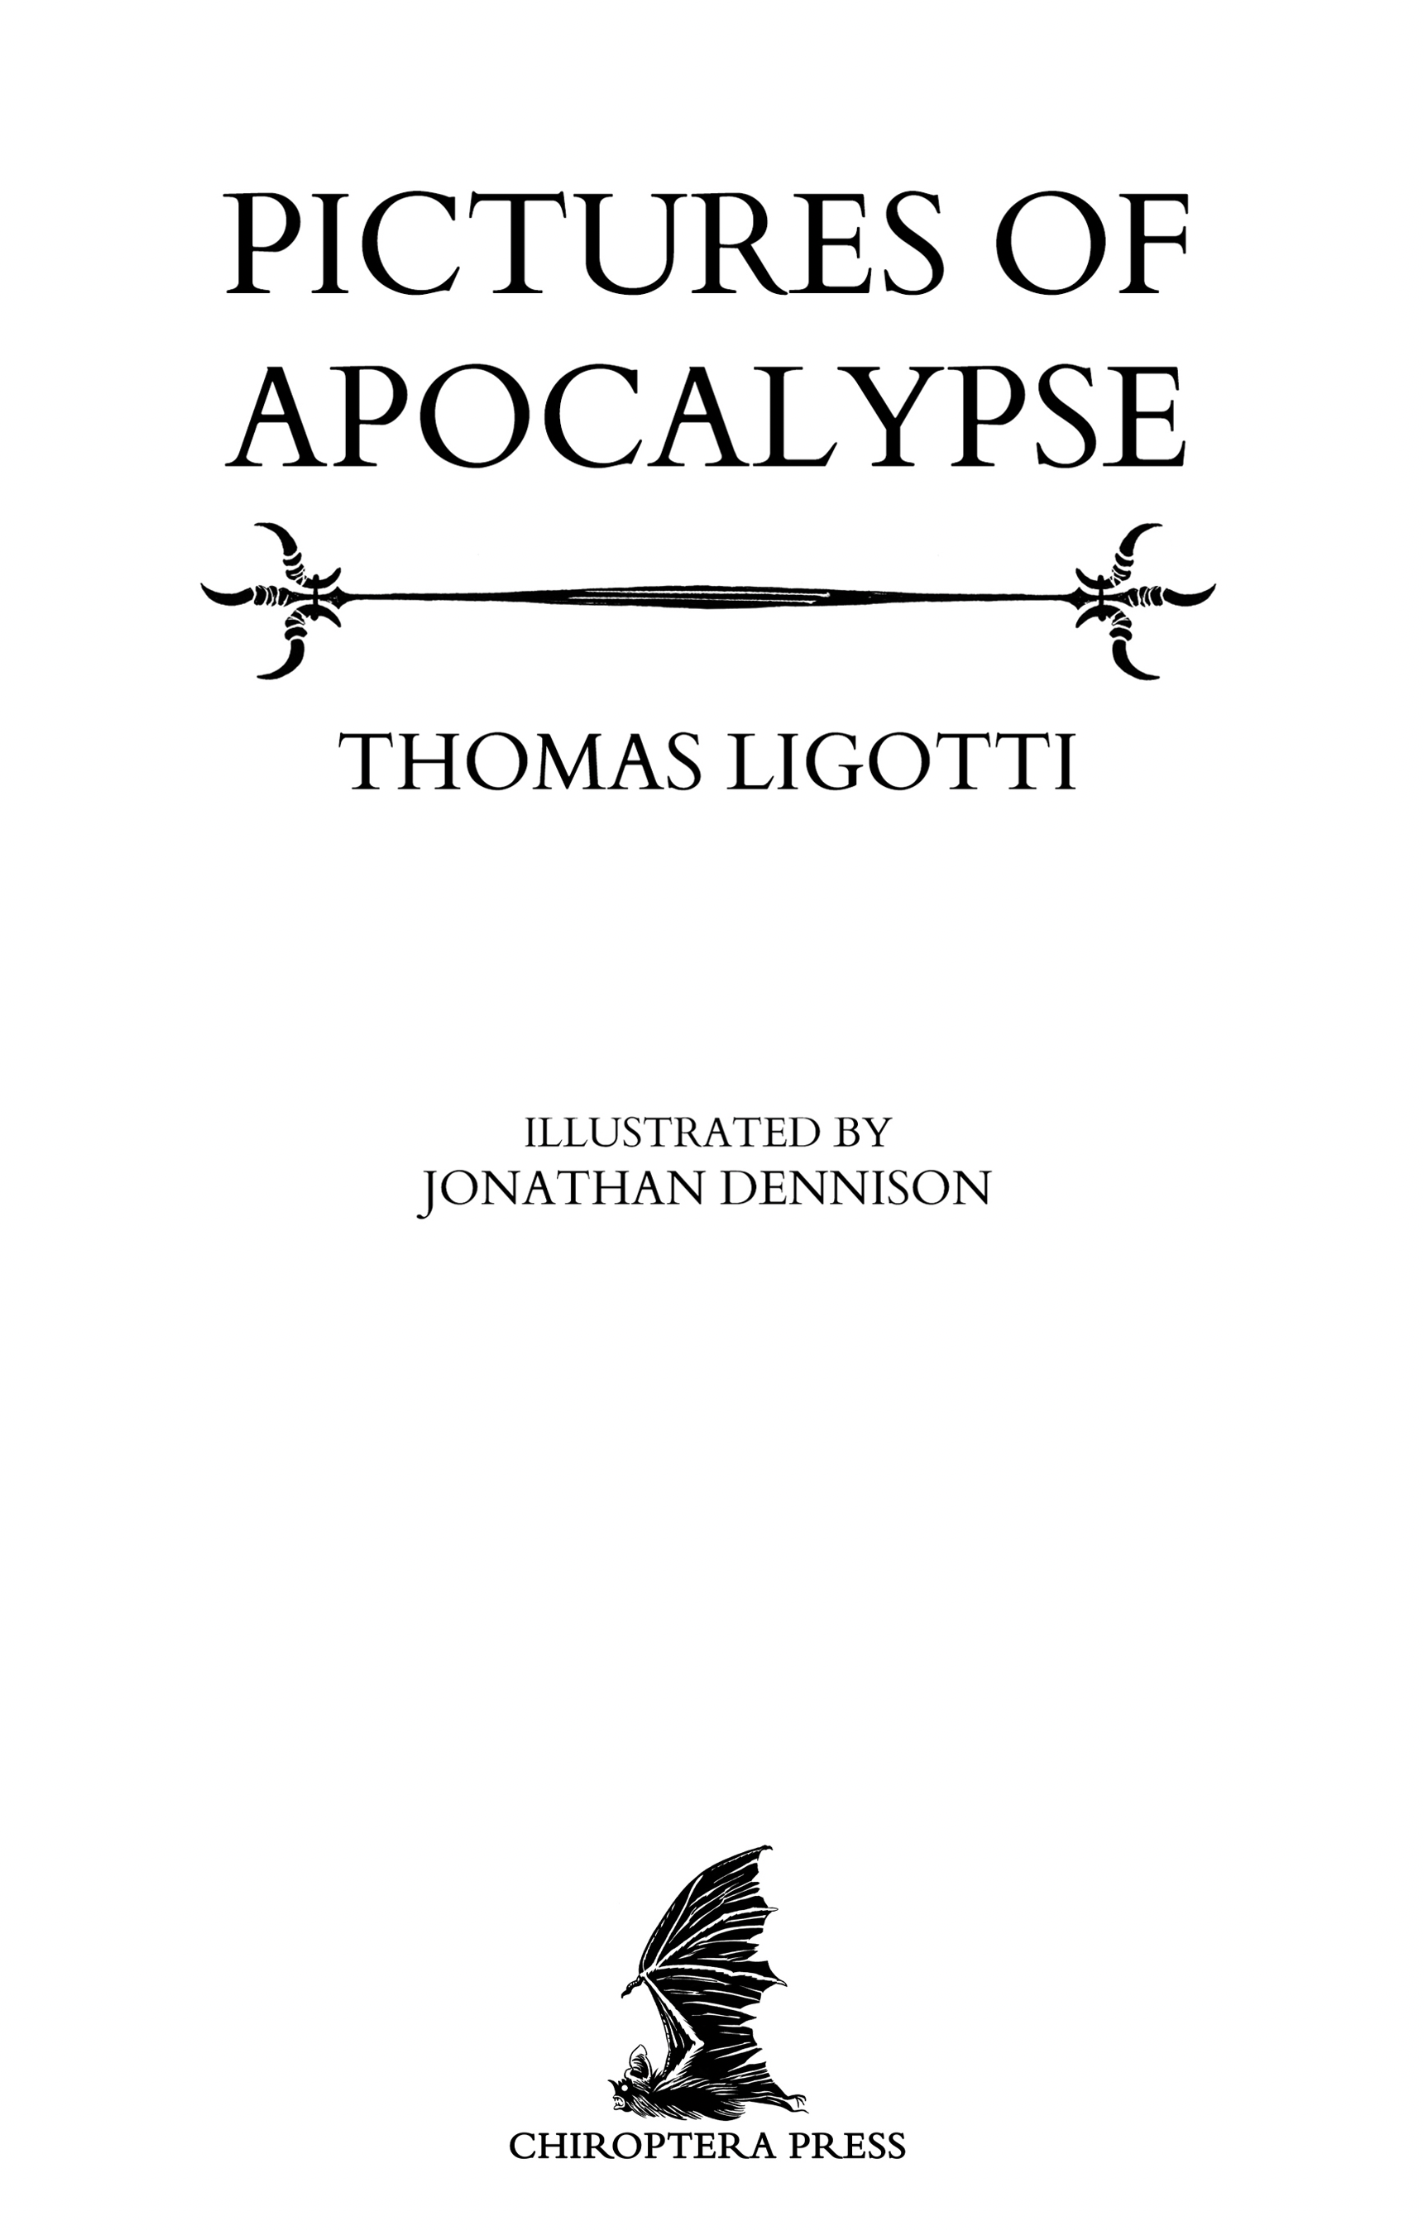 Pictures of Apocalypse by Thomas Ligotti